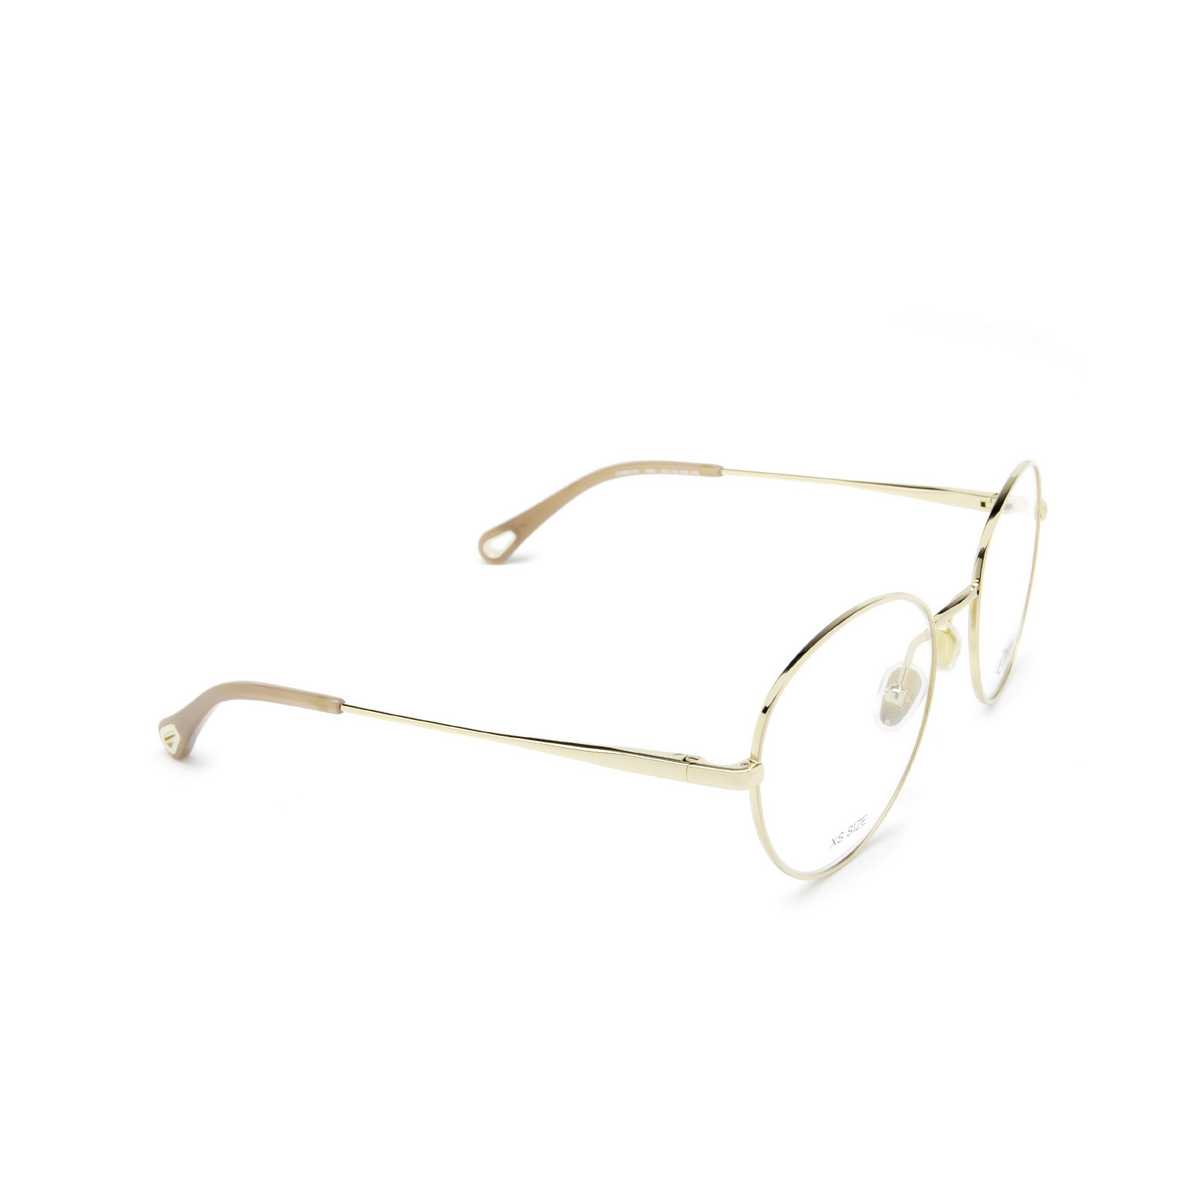 Chloé® Round Eyeglasses: CH0021O color Gold & Nude 009 - three-quarters view.